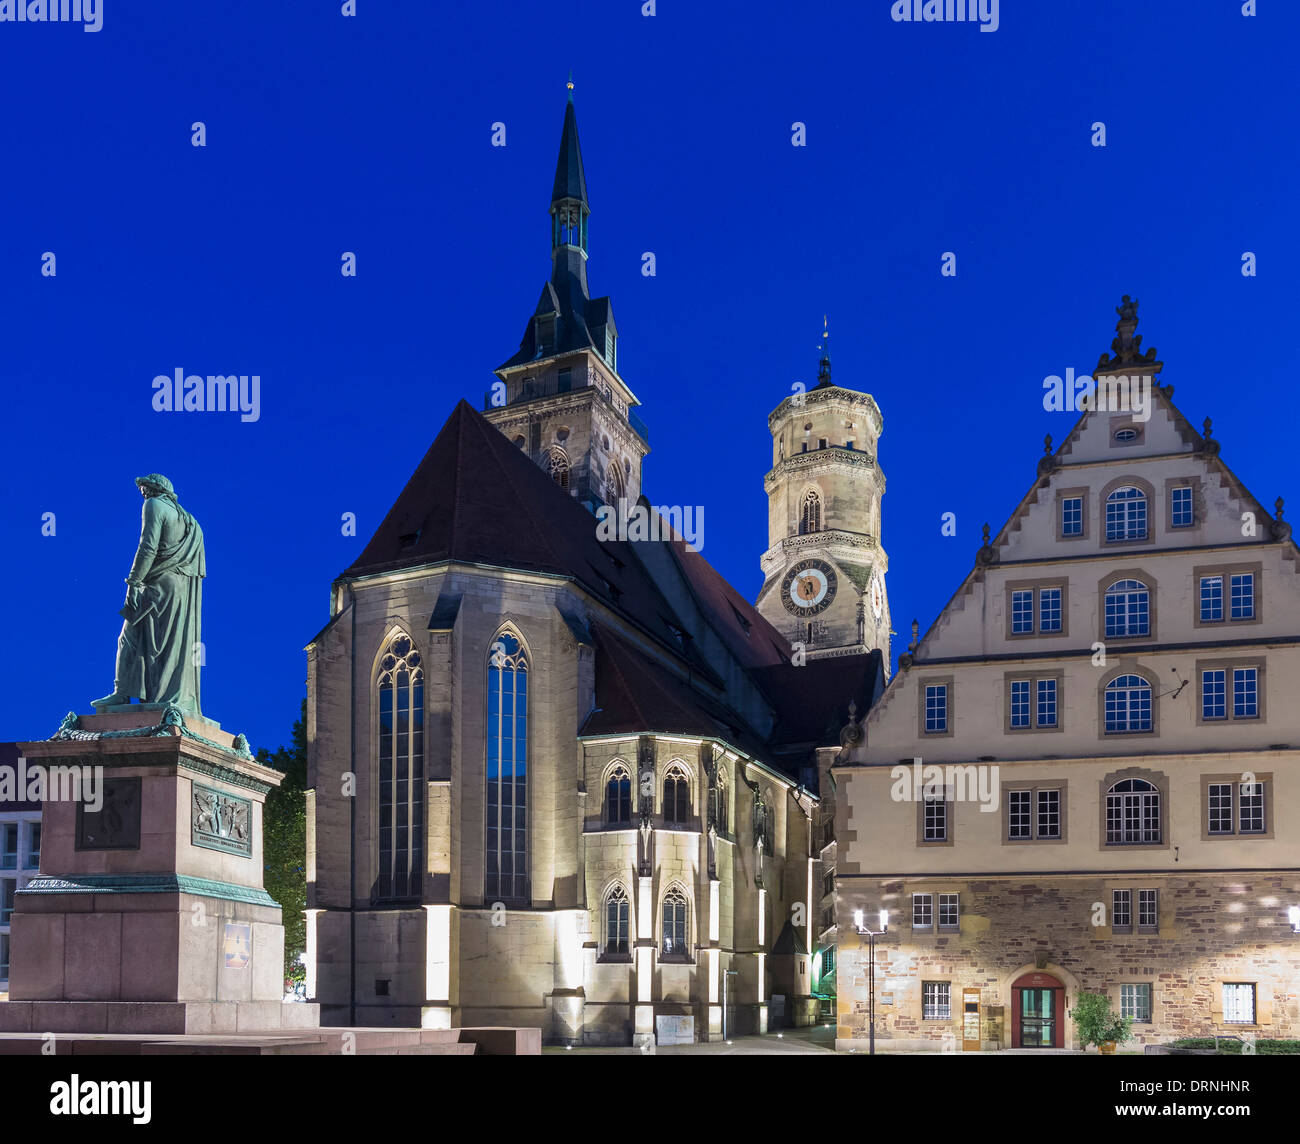 Schillerplatz, Stuttgart, Germania, Europa con la statua di Schiller e la chiesa Stiftskirche Foto Stock